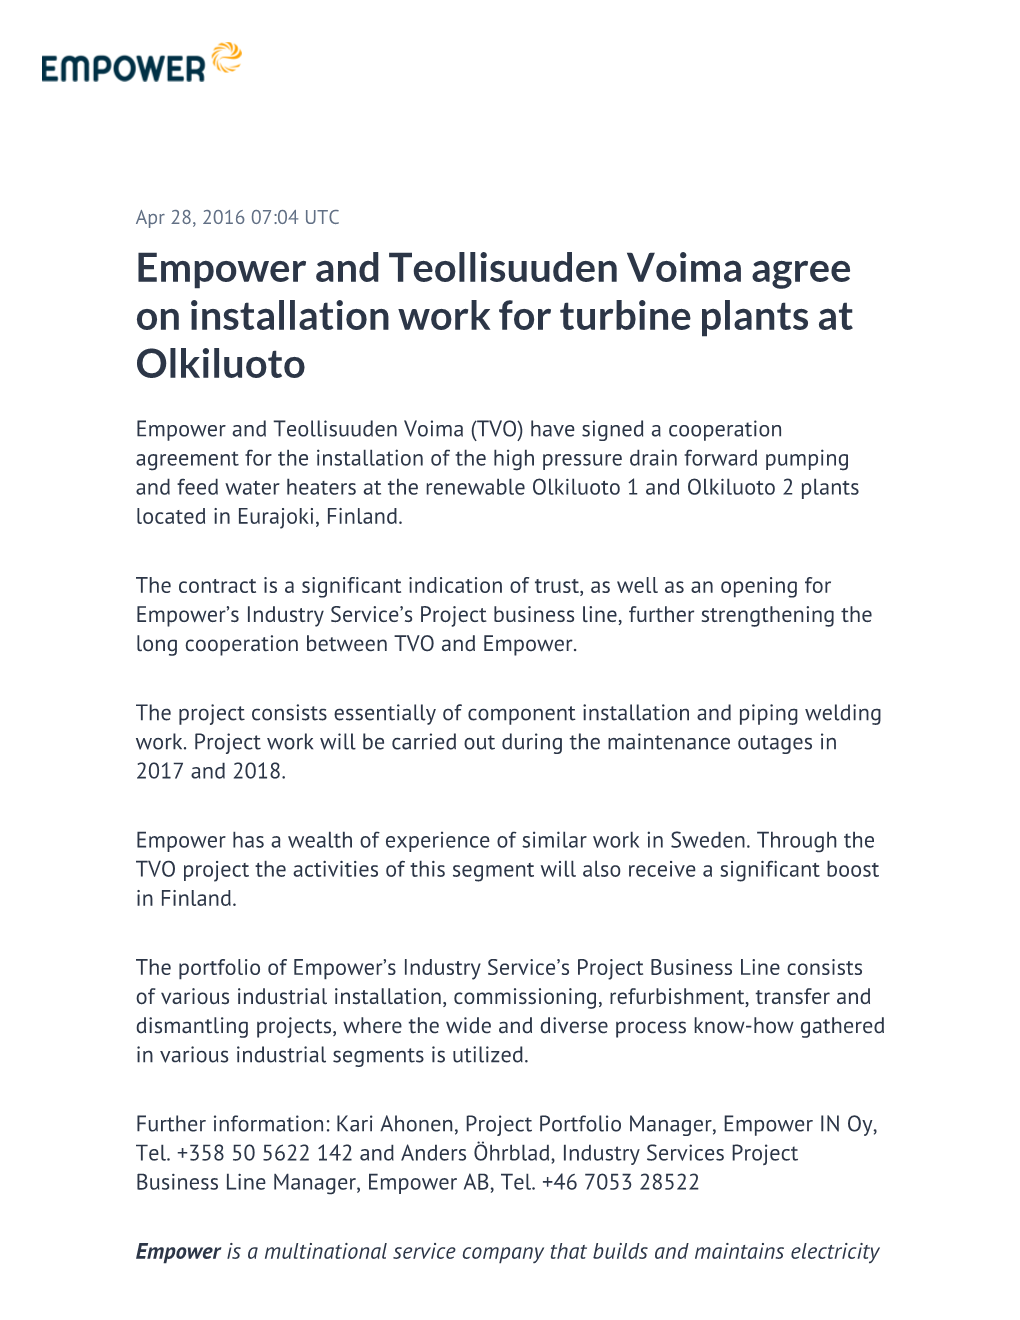 Empower and Teollisuuden Voima Agree on Installation Work for Turbine Plants at Olkiluoto